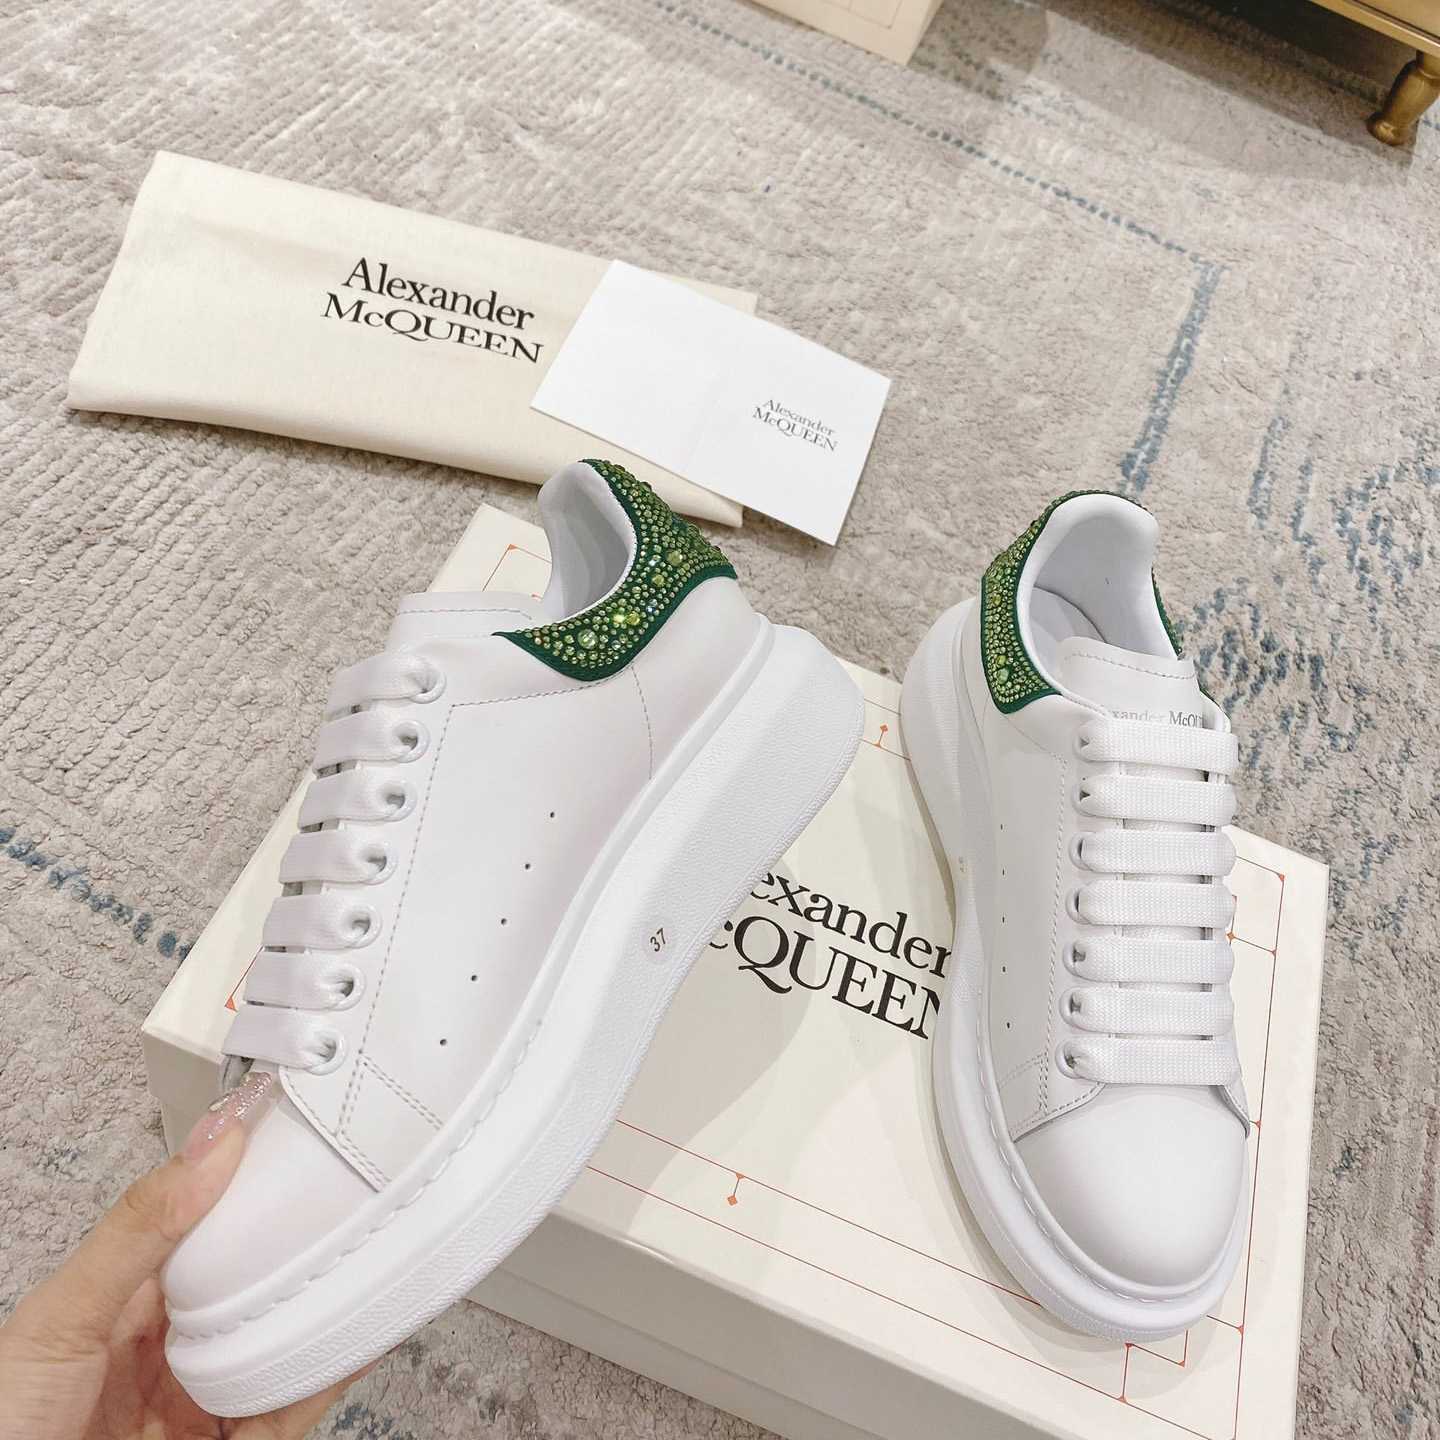 Alexander Mqueen Oversized Sneaker in White/Acid Green - DesignerGu